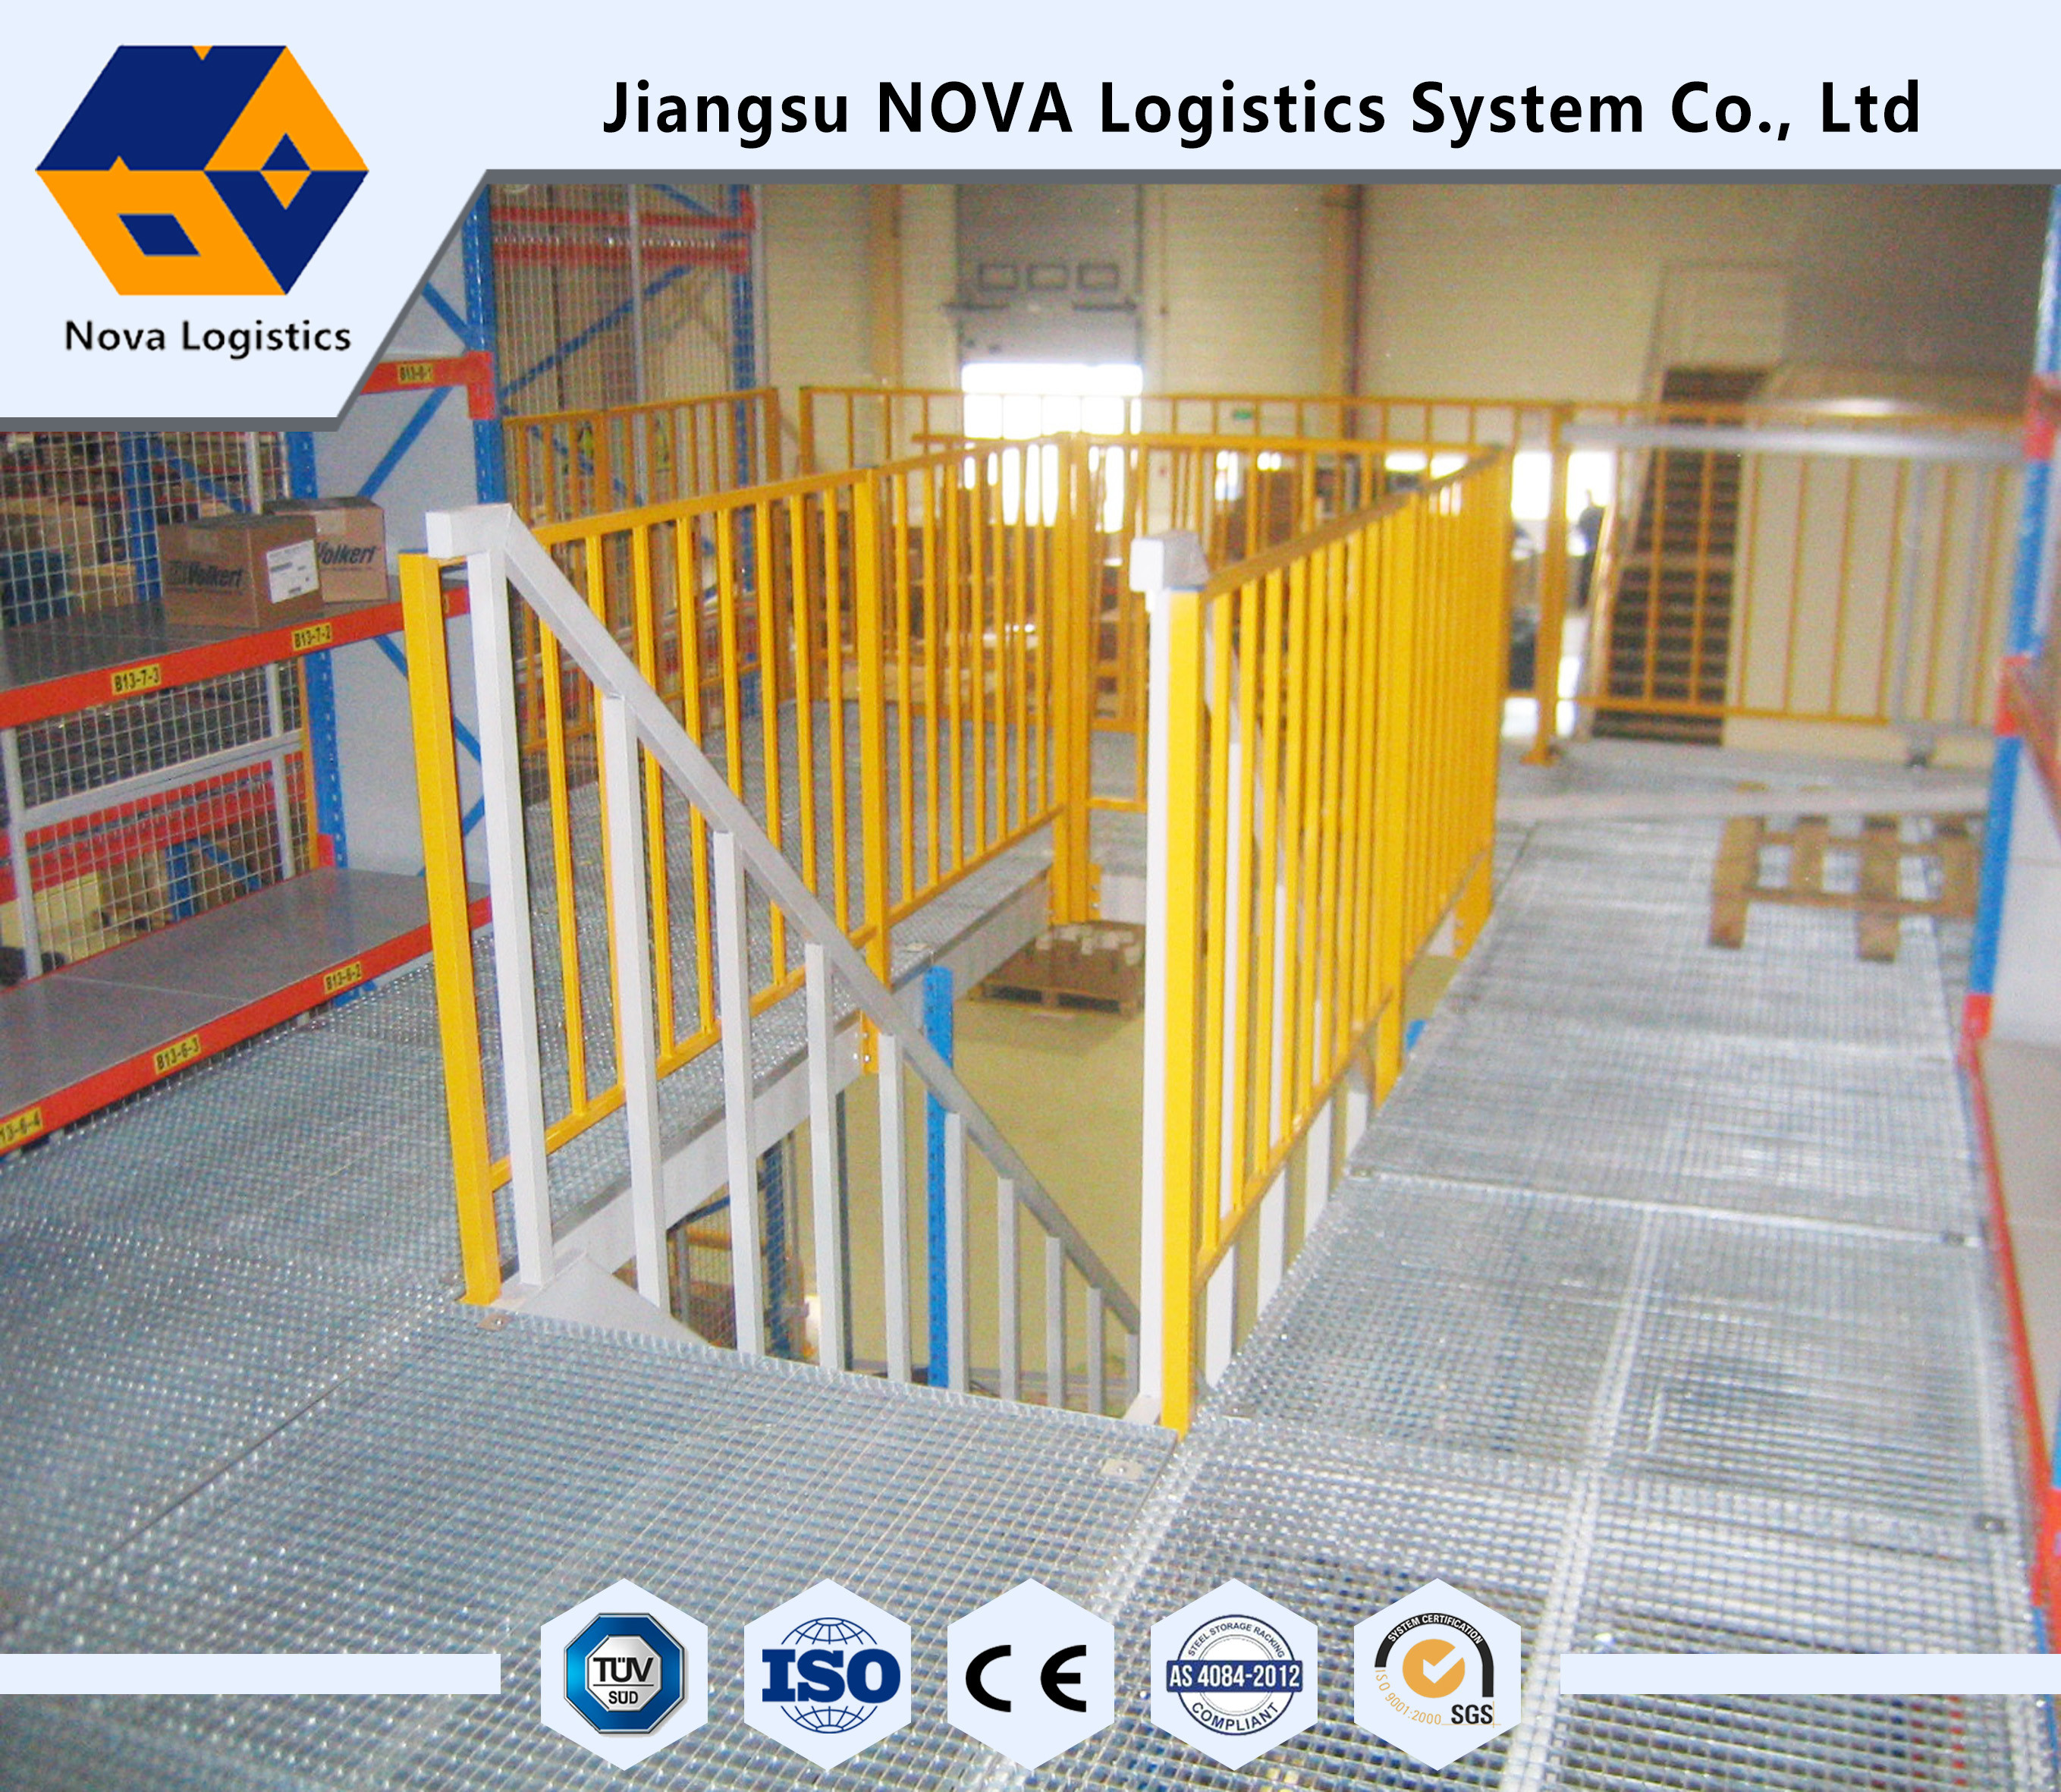 Trwałe urządzenia logistyczne NOVA z 2018 roku o dużym wykorzystaniu przestrzeni